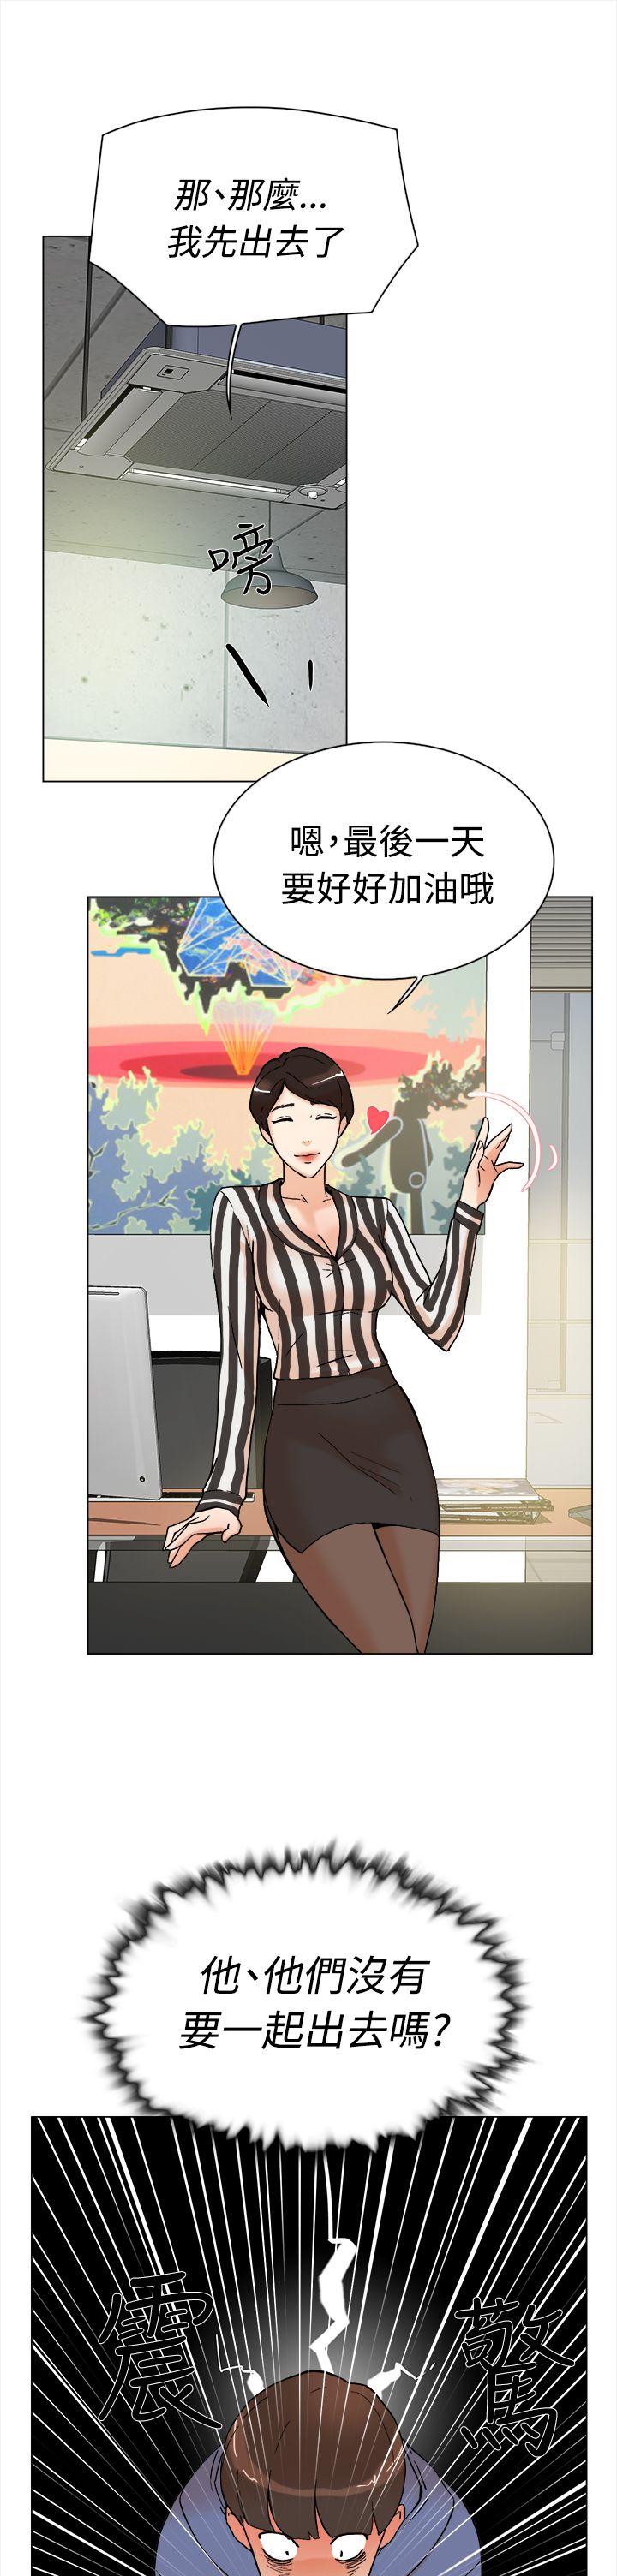 韩国污漫画 她的高跟鞋(無刪減) 第2话 40